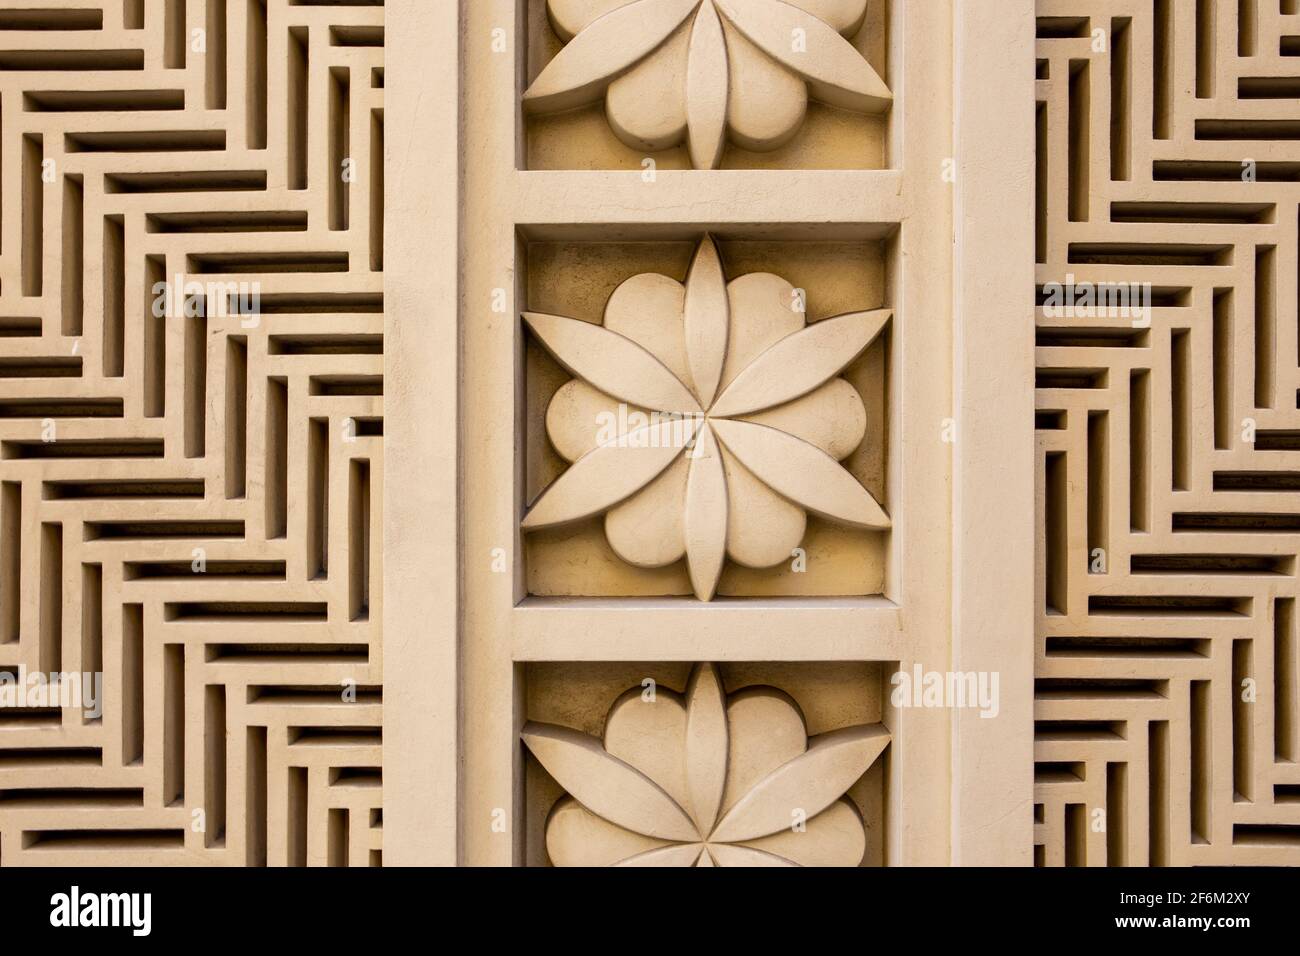 Décoration et relief en pierre sculptée de style arabe, motifs floraux, formes géométriques et lignes, sur une façade de bâtiment à Dubaï JBR, Émirats arabes Unis. Banque D'Images